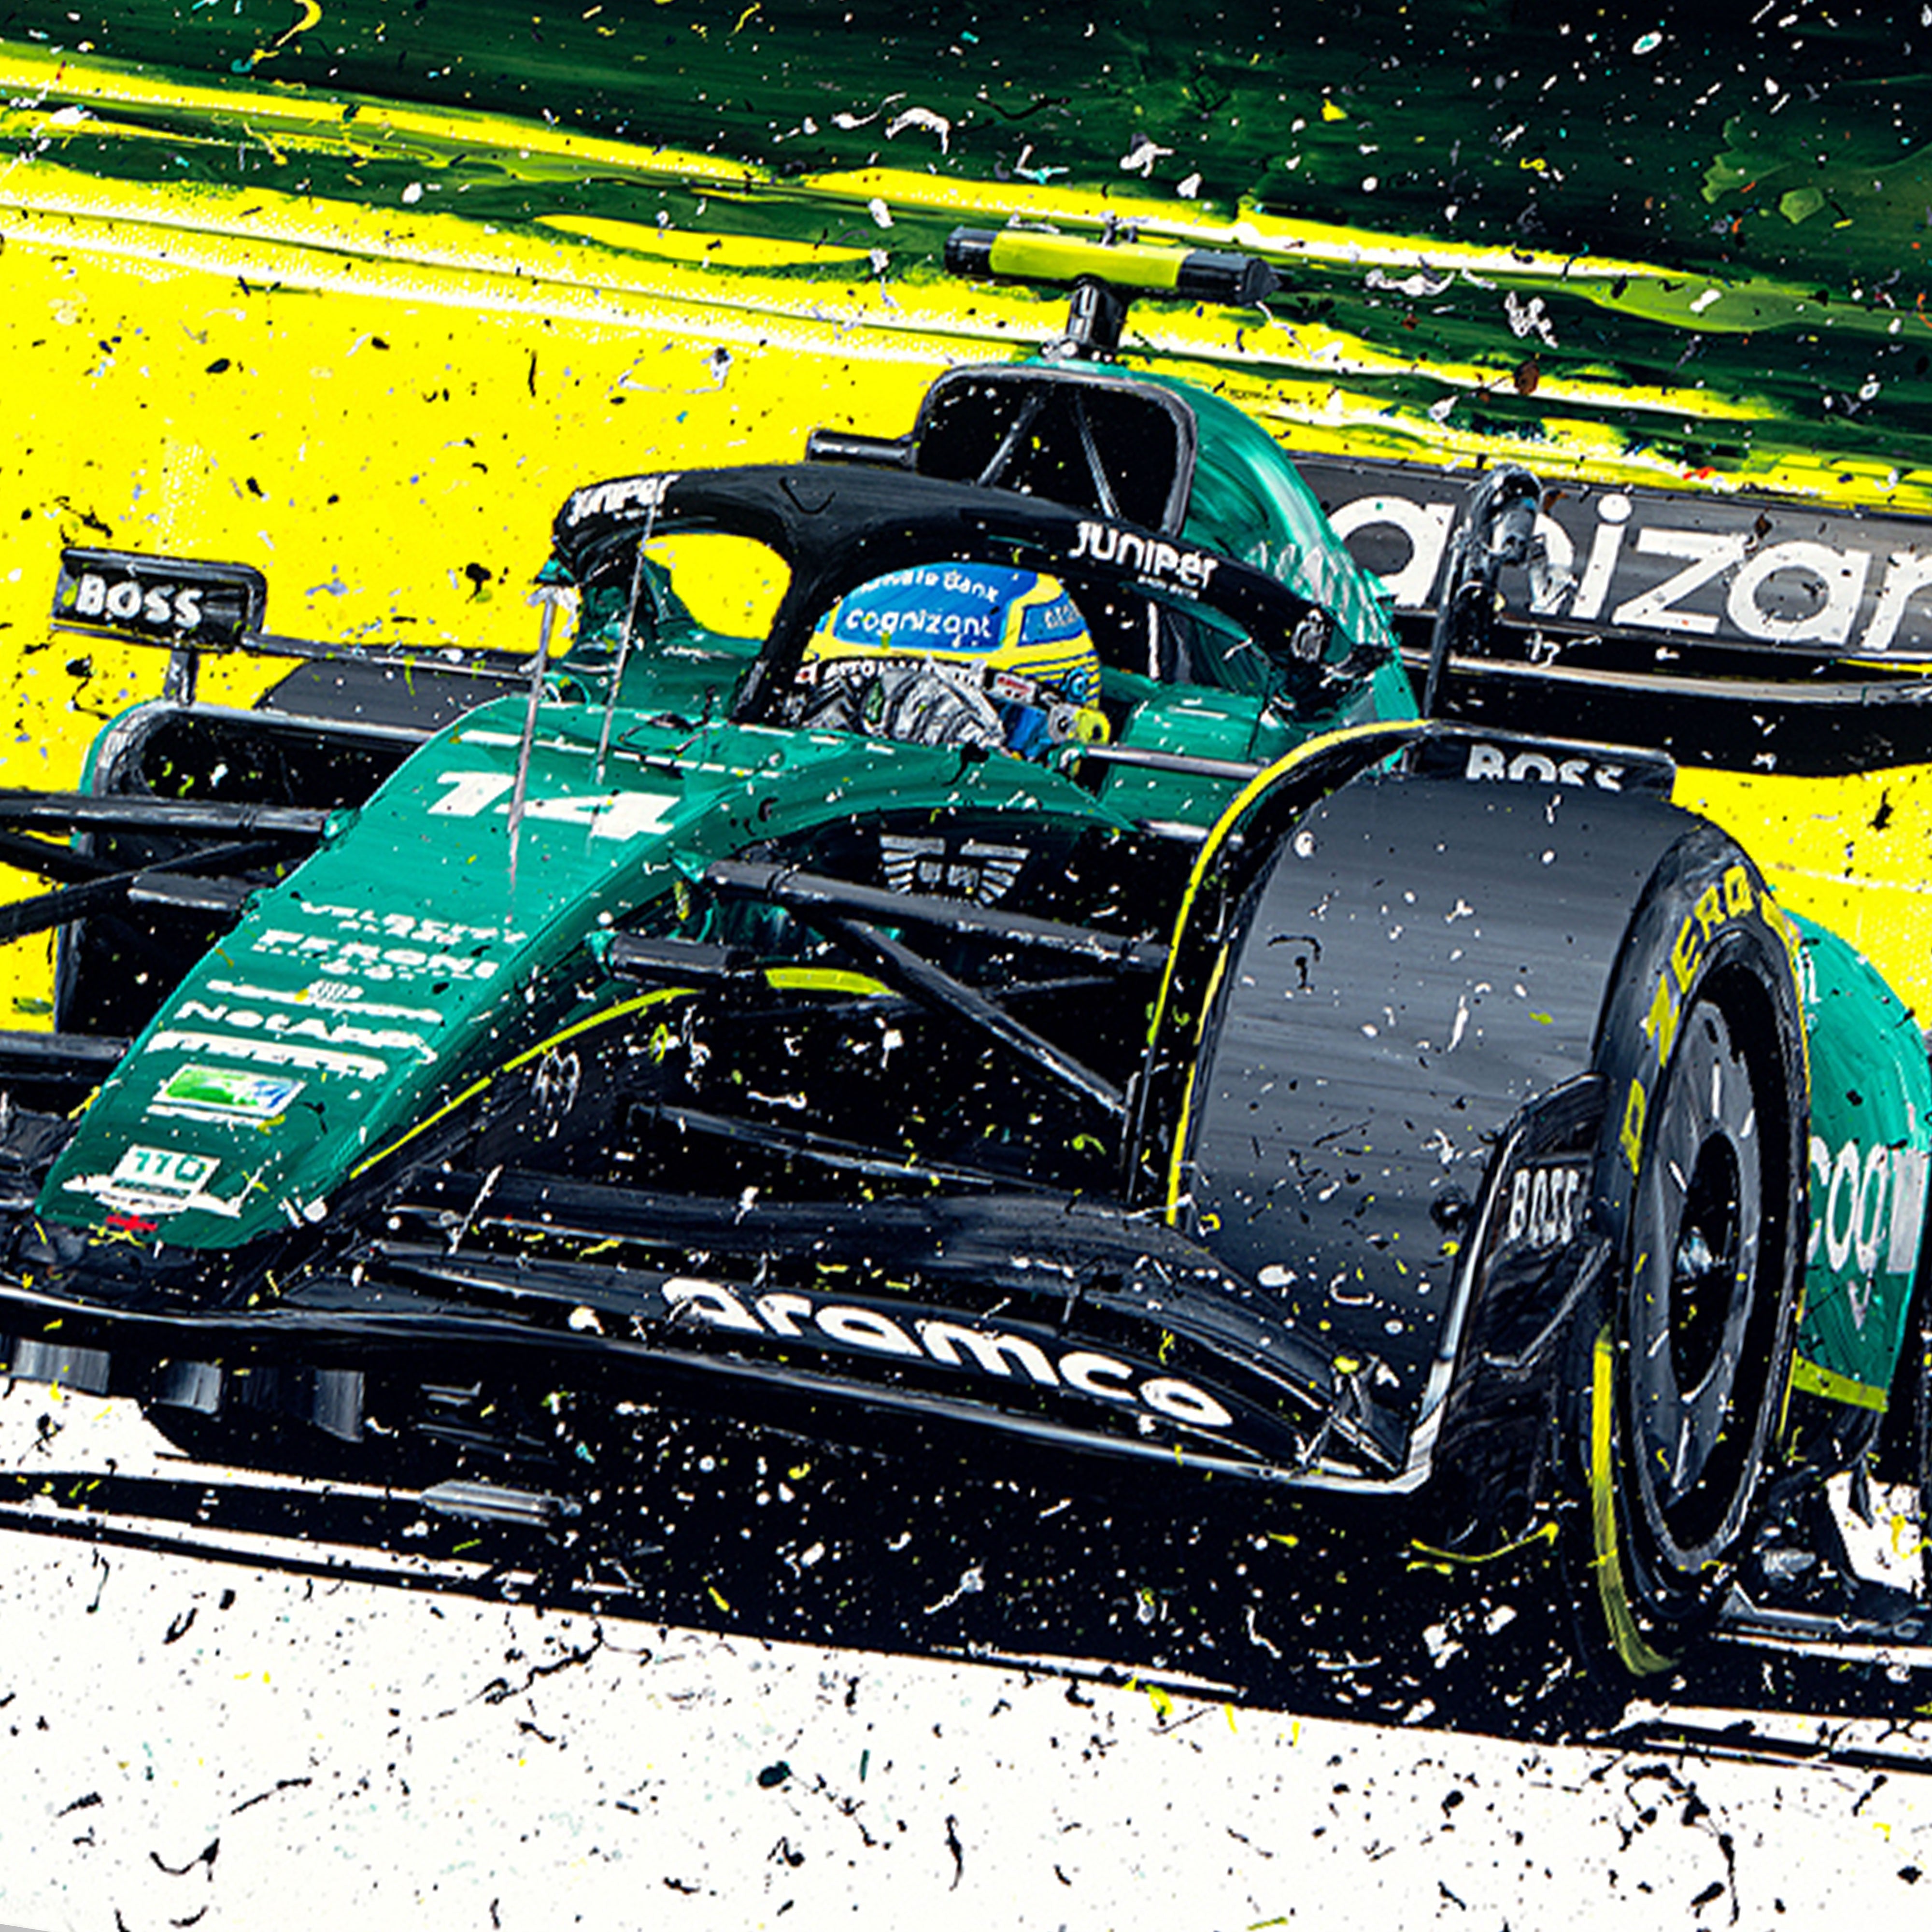 Fernando Alonso 2023 F1 Art - Limited Edition Print